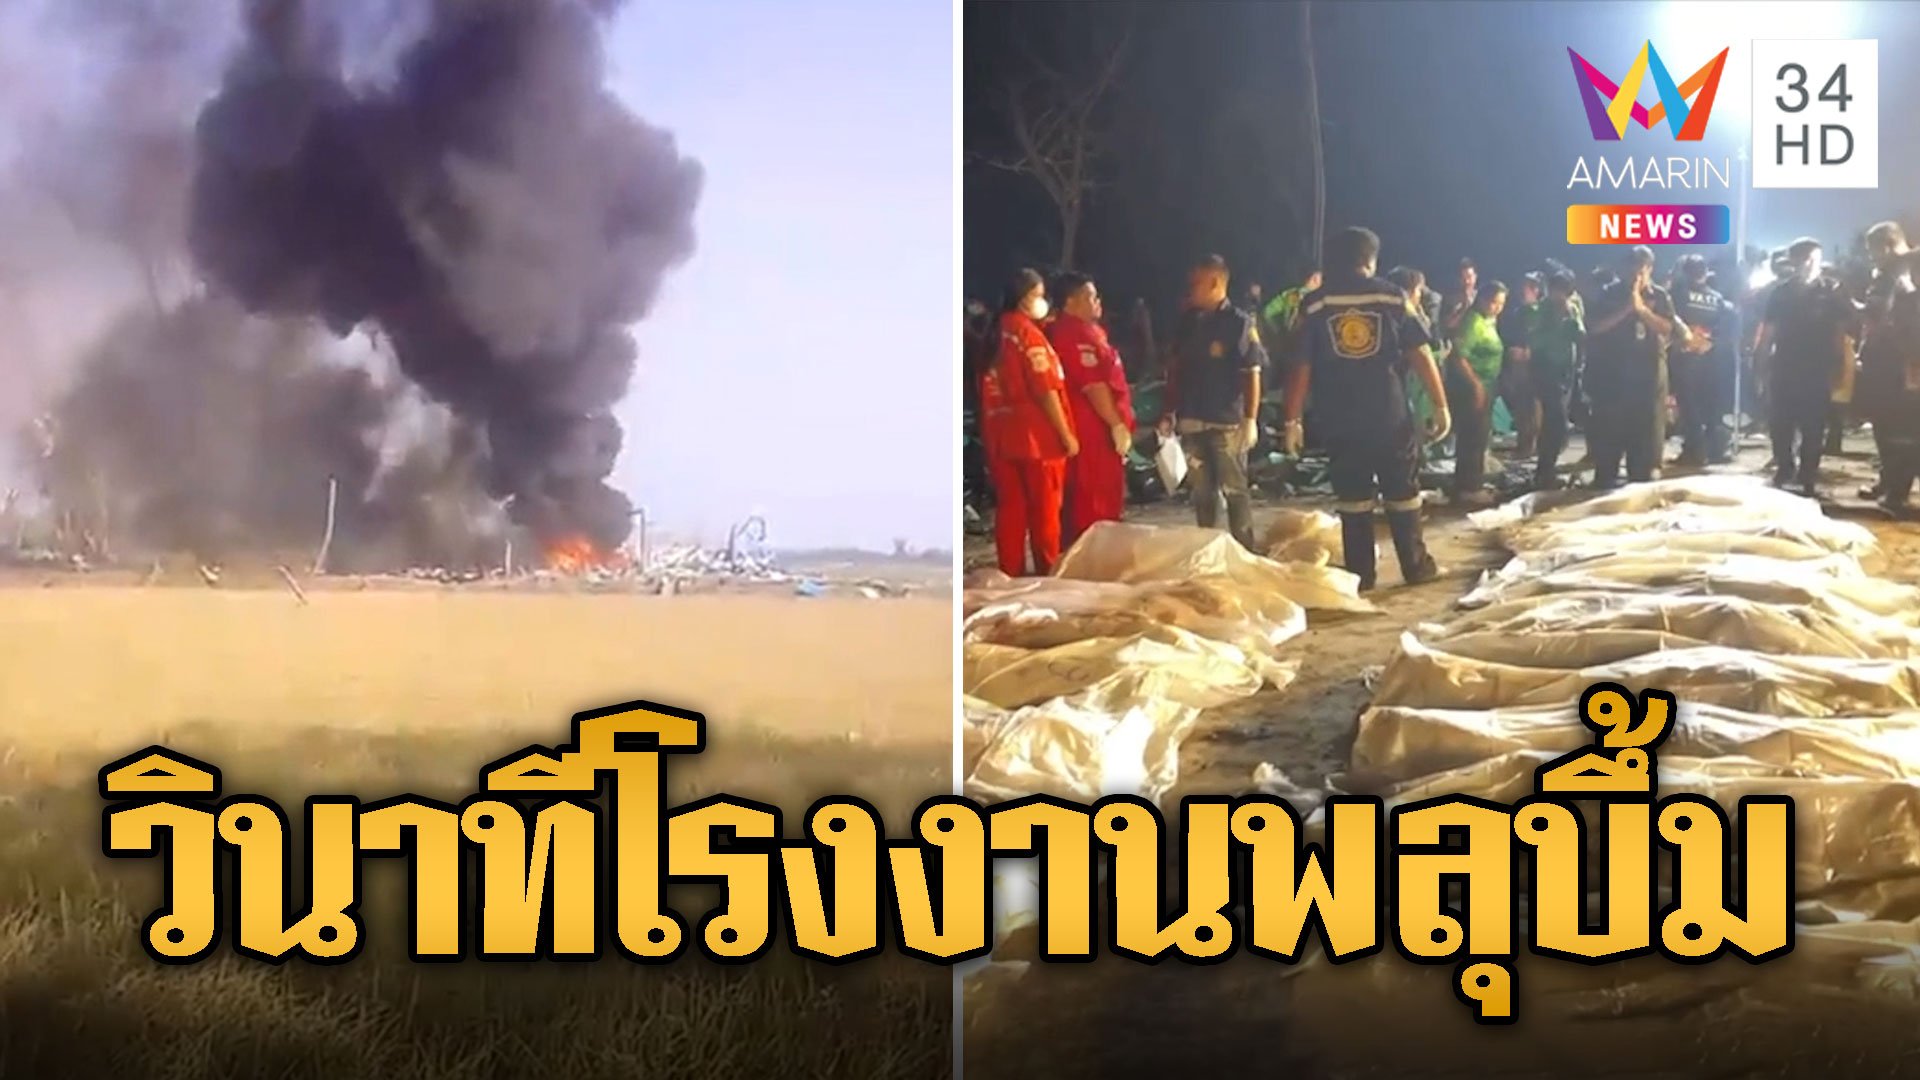 เปิดนาที โรงงานพลุระเบิด สุพรรณบุรี ดับสลด 23 ศพ | ข่าวเที่ยงอมรินทร์ | 18 ม.ค. 67 | AMARIN TVHD34